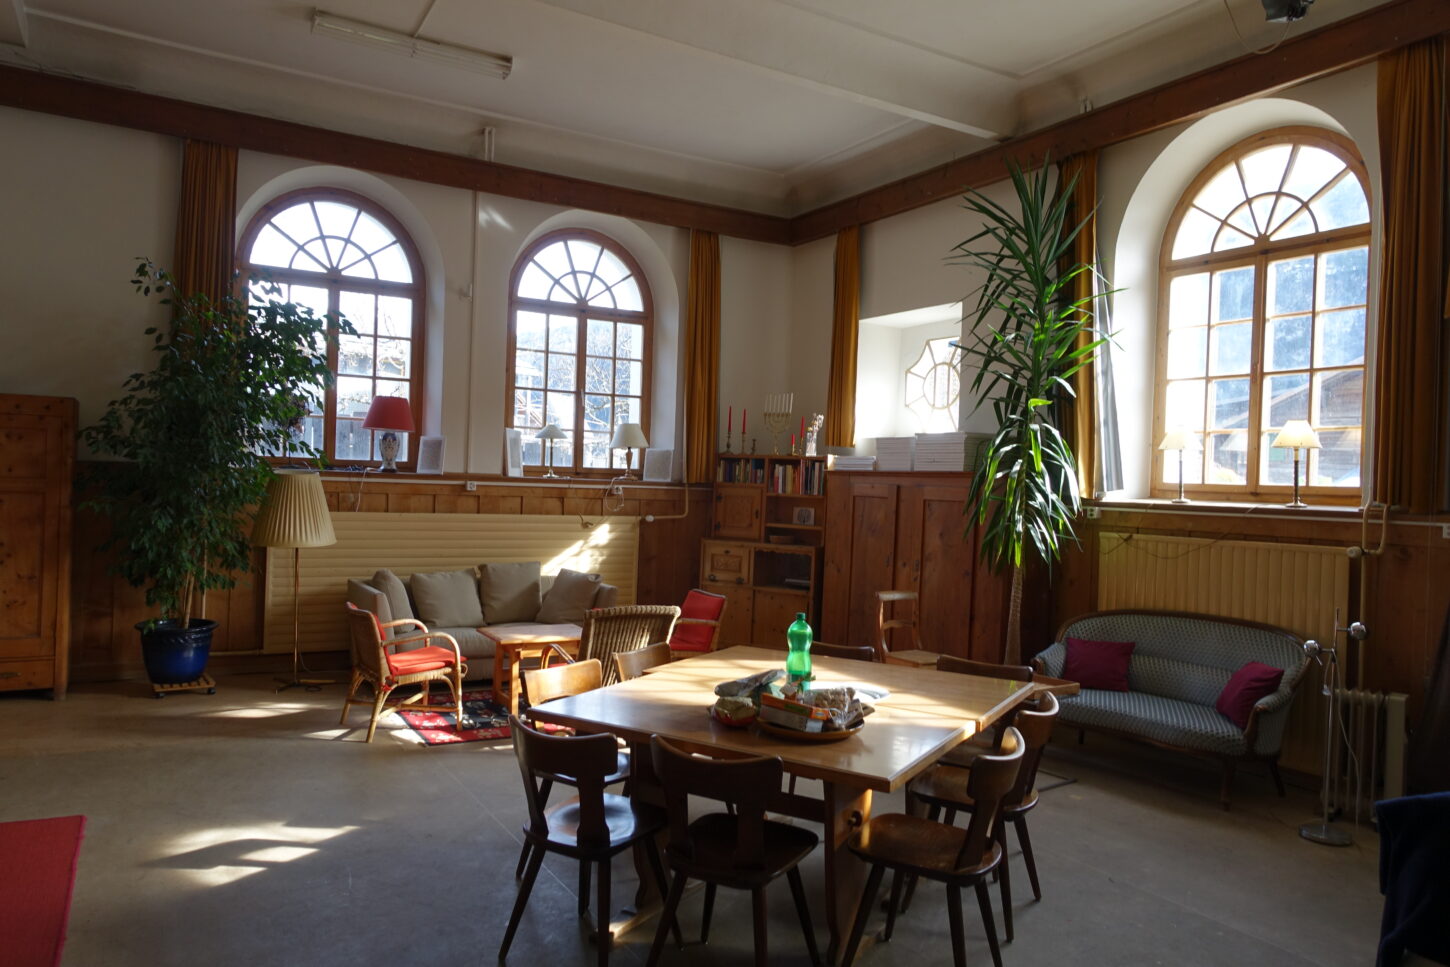 Das Atelier der Künstlerin im ehemaligen Schulhaus des Bergdorfs Rueun, Graubünden.